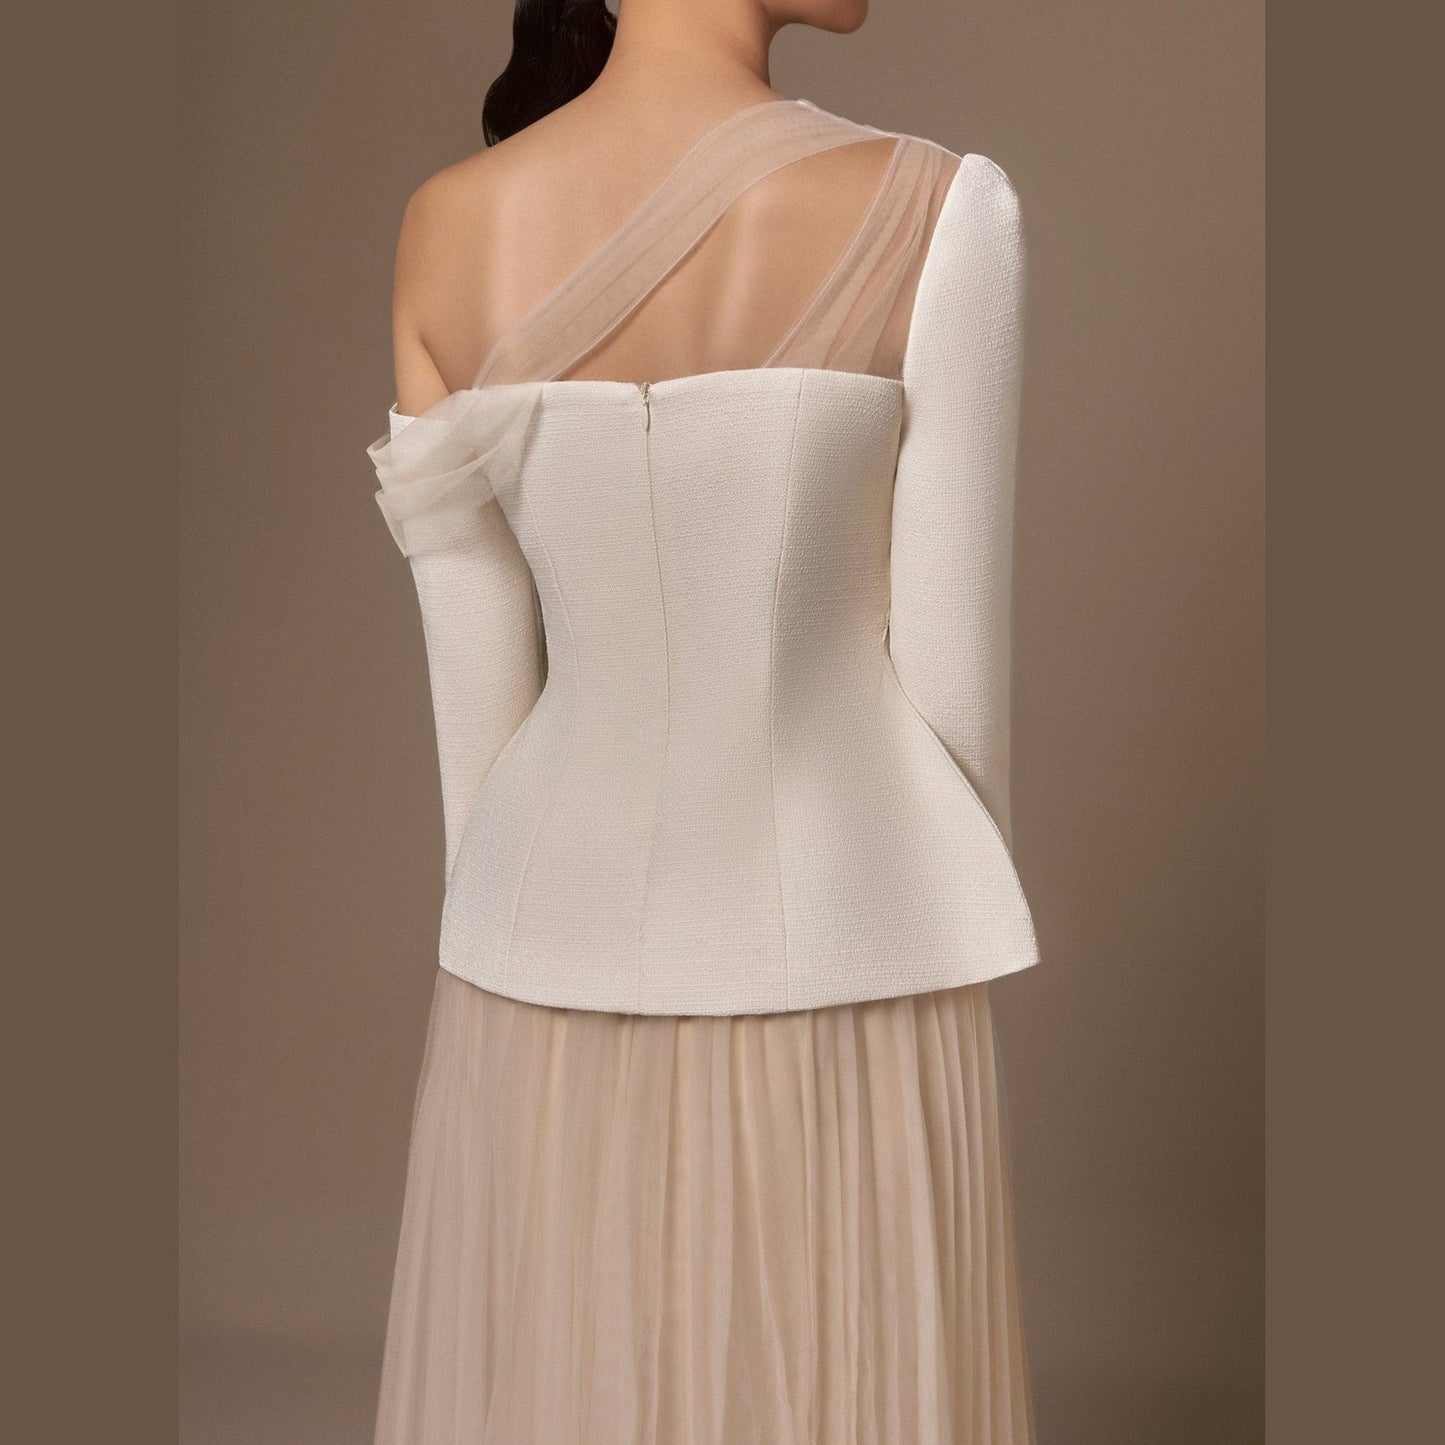 SANDY | Tweed Set - Cielie Dior Style Top